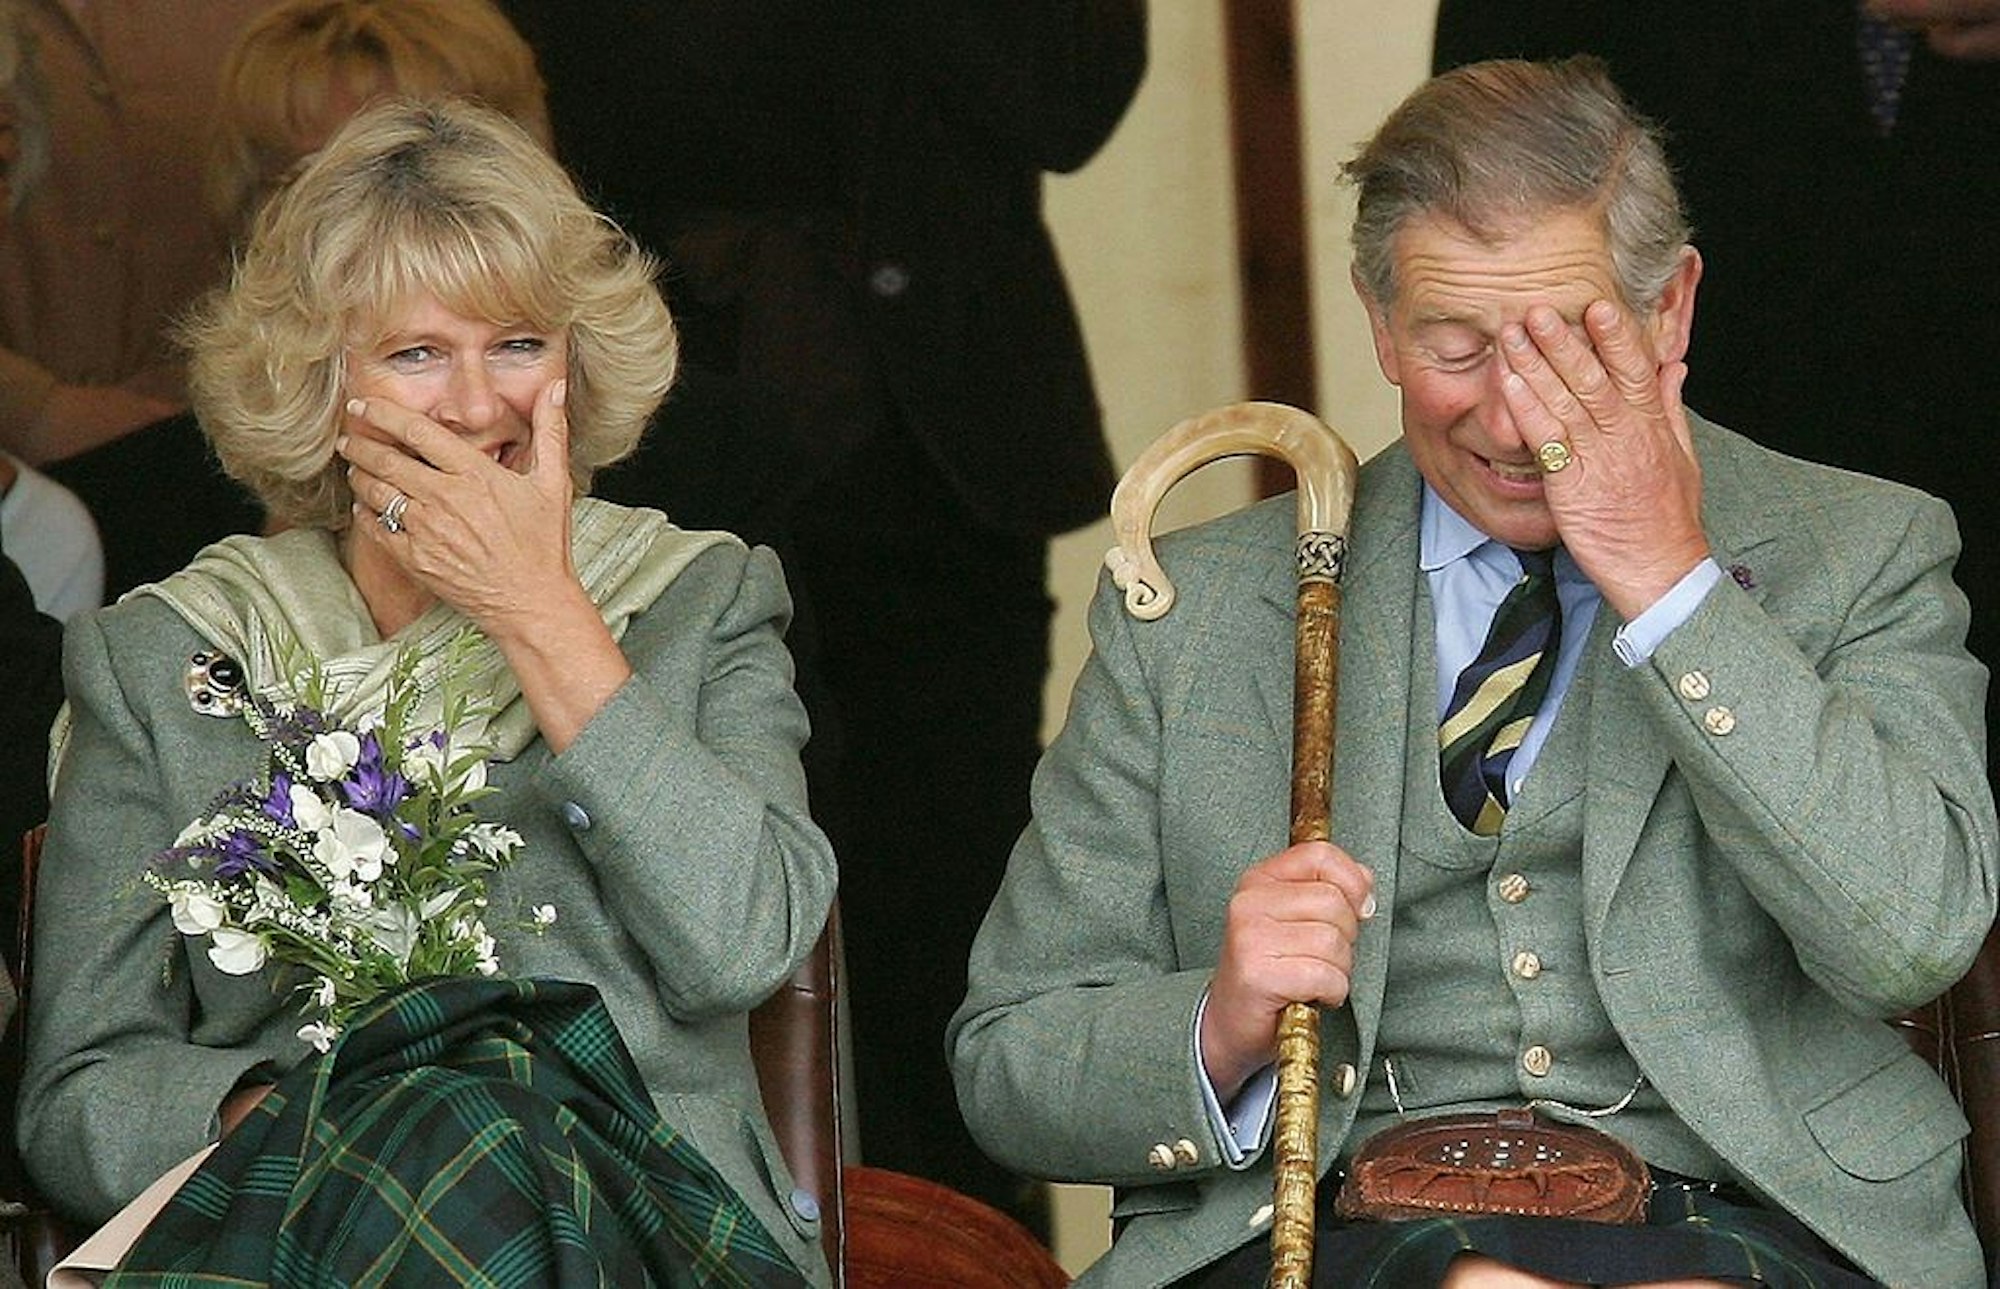 Queen Camilla und König Charles III. lachen gemeinsam bei einer Veranstaltung in den schottischen Highlands am 6. August 2005